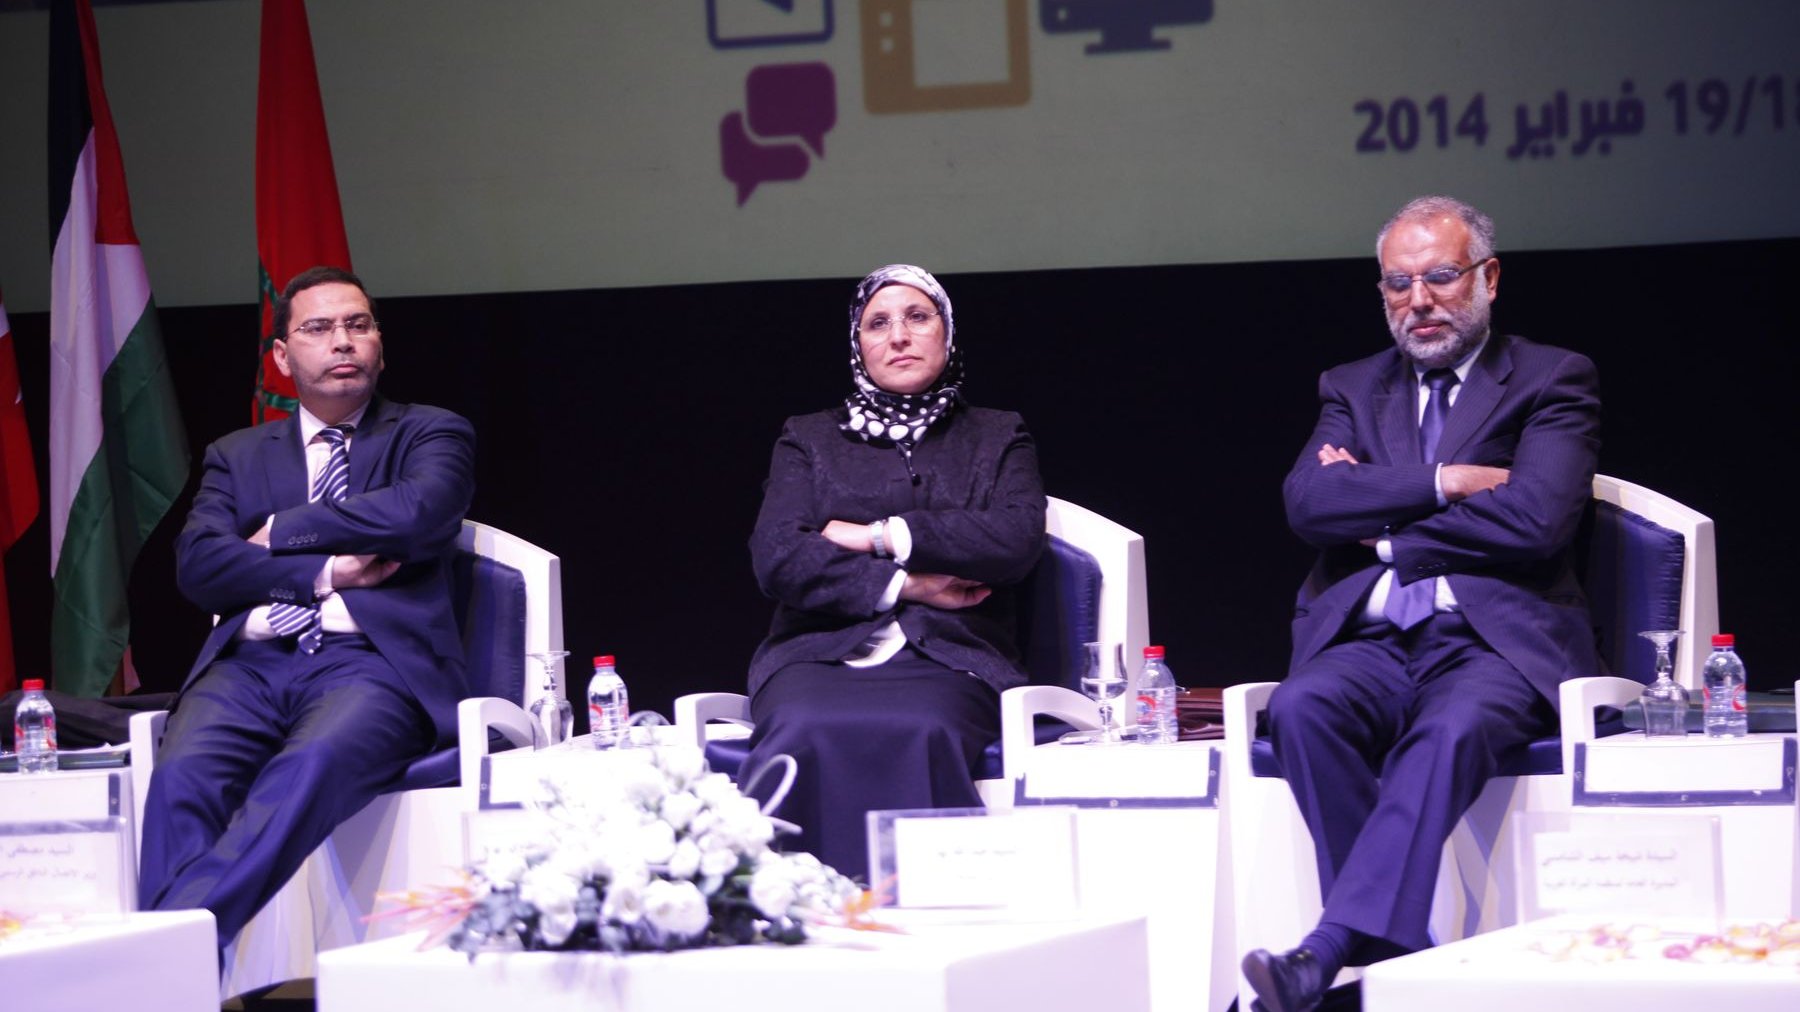 Les trois ministres PJDistes semblent rester sans voix face aux déclarations de Sheikha Seif Al-Shami concernant la situation de la femme dans les médias arabes.
